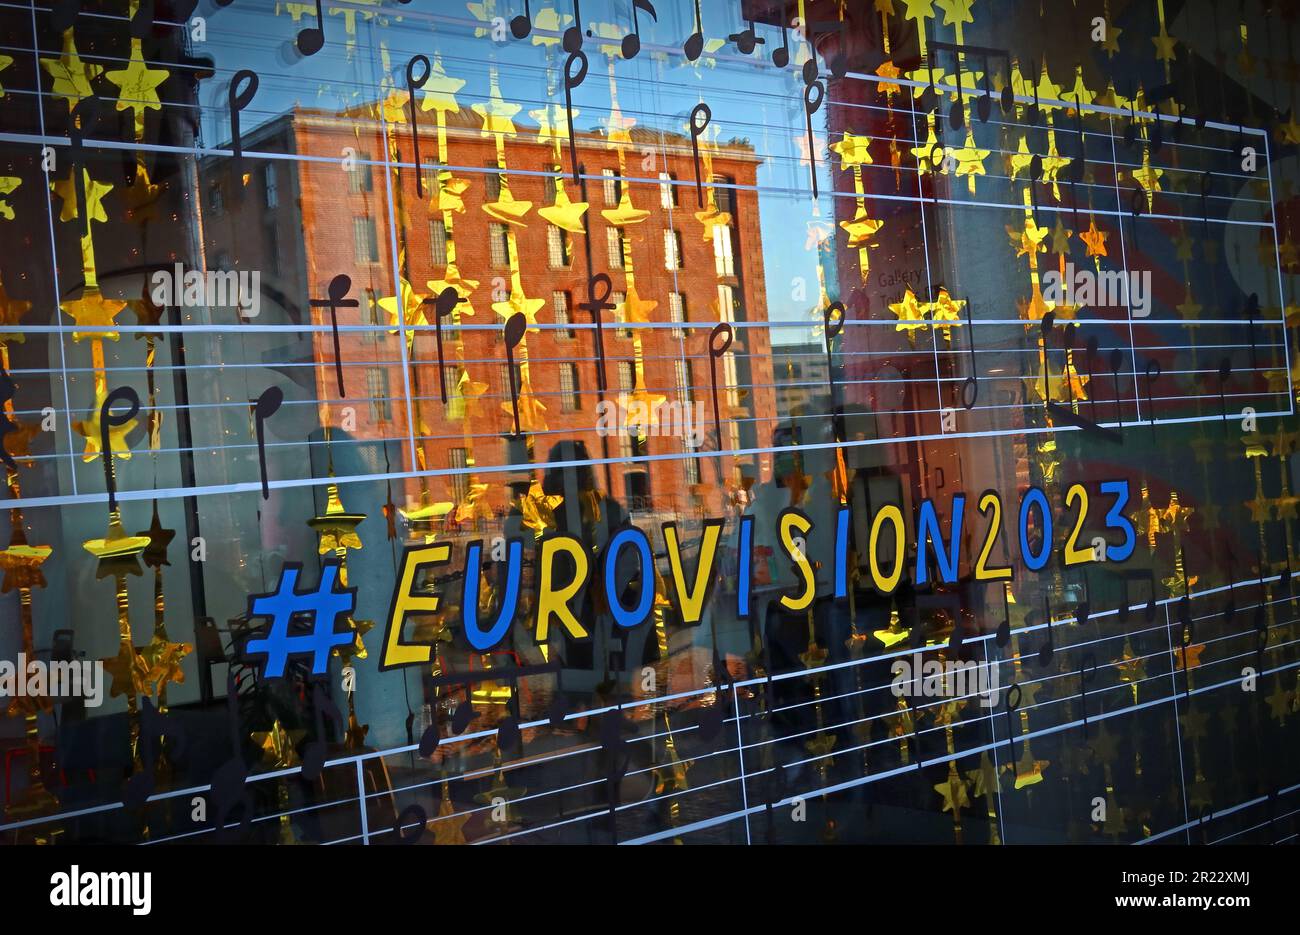 Eurovision2023 vitrines décorées, avec le coucher de soleil du Royal Albert Dock réfléchi, Liverpool, Merseyside, Angleterre, Royaume-Uni, L3 4AF Banque D'Images